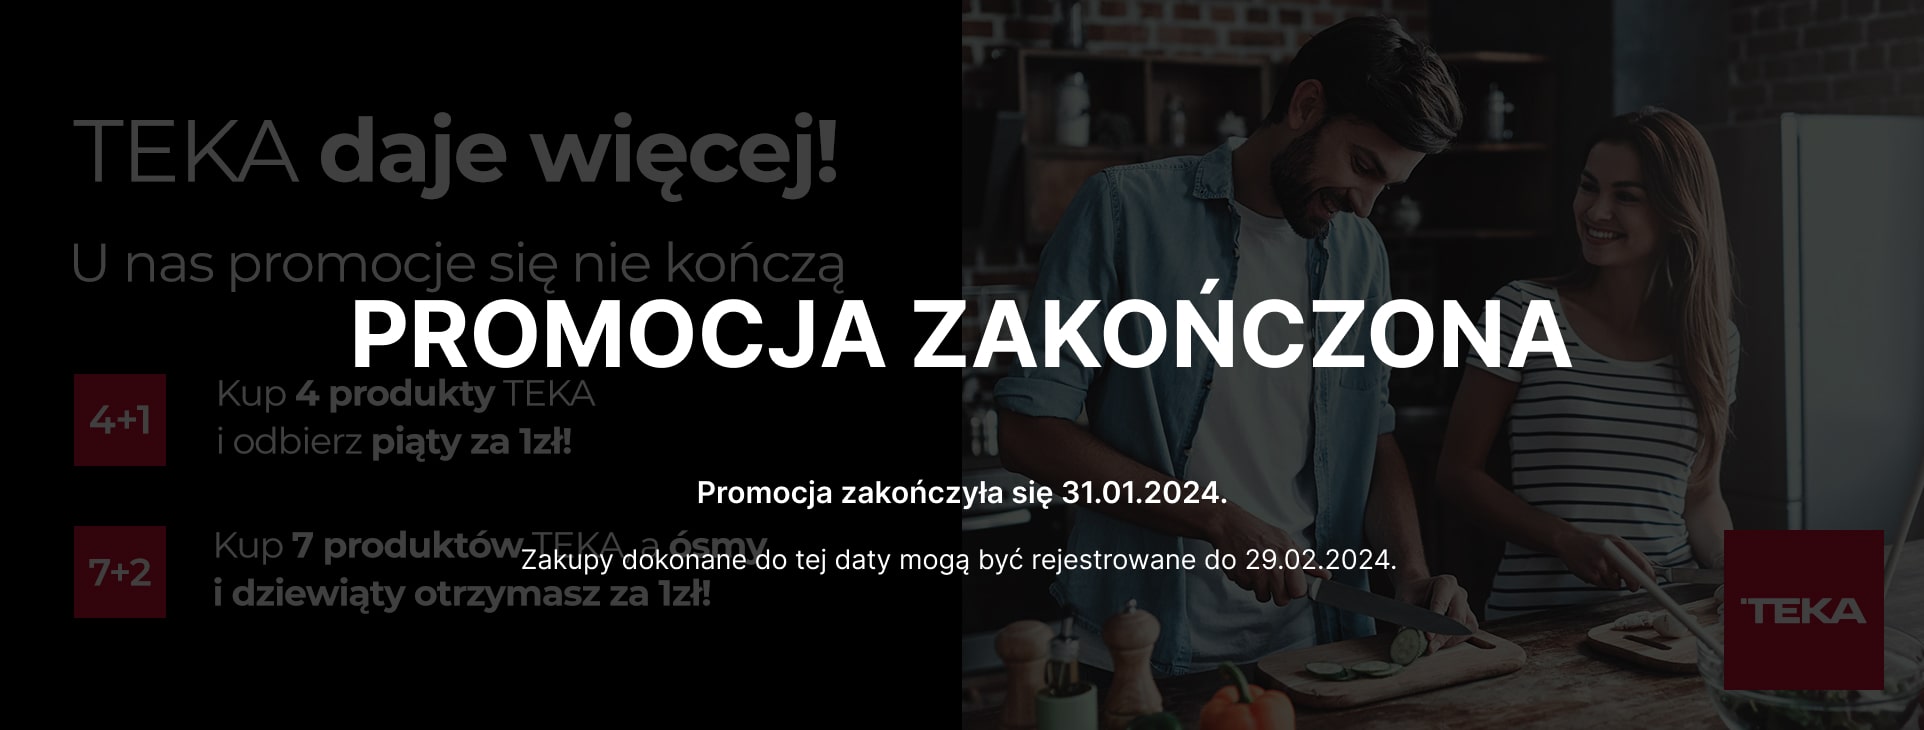 promo_3-banner TEKA DAJE WIĘCEJ 2022